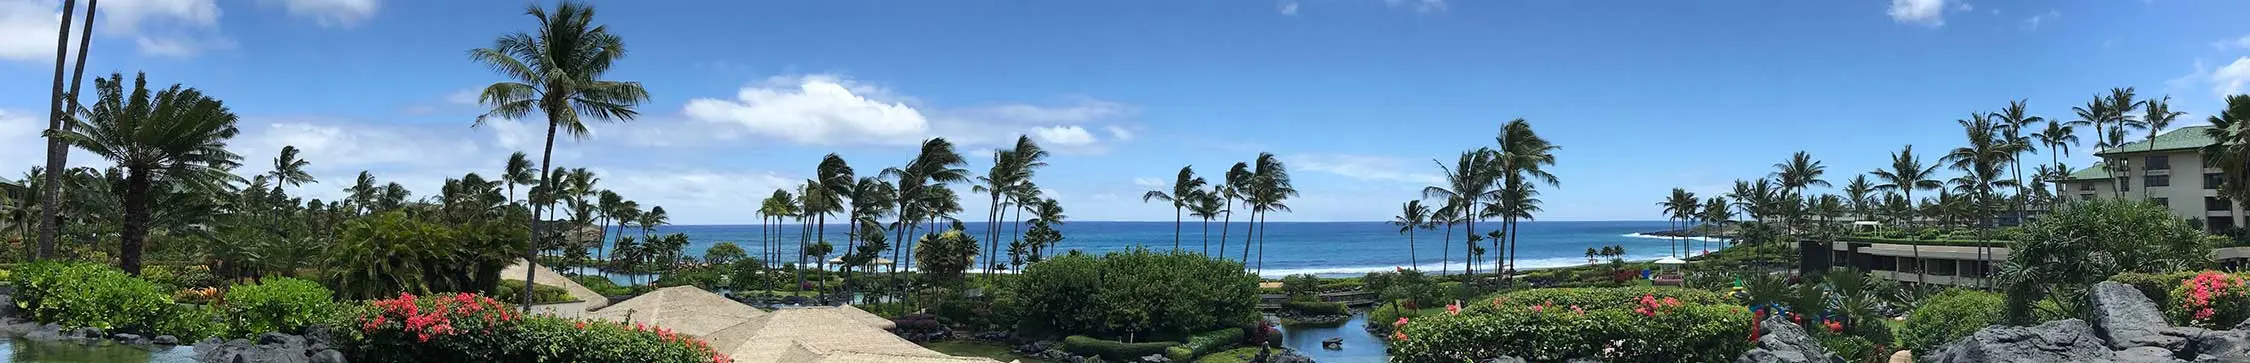 lihue-hawaii-banner